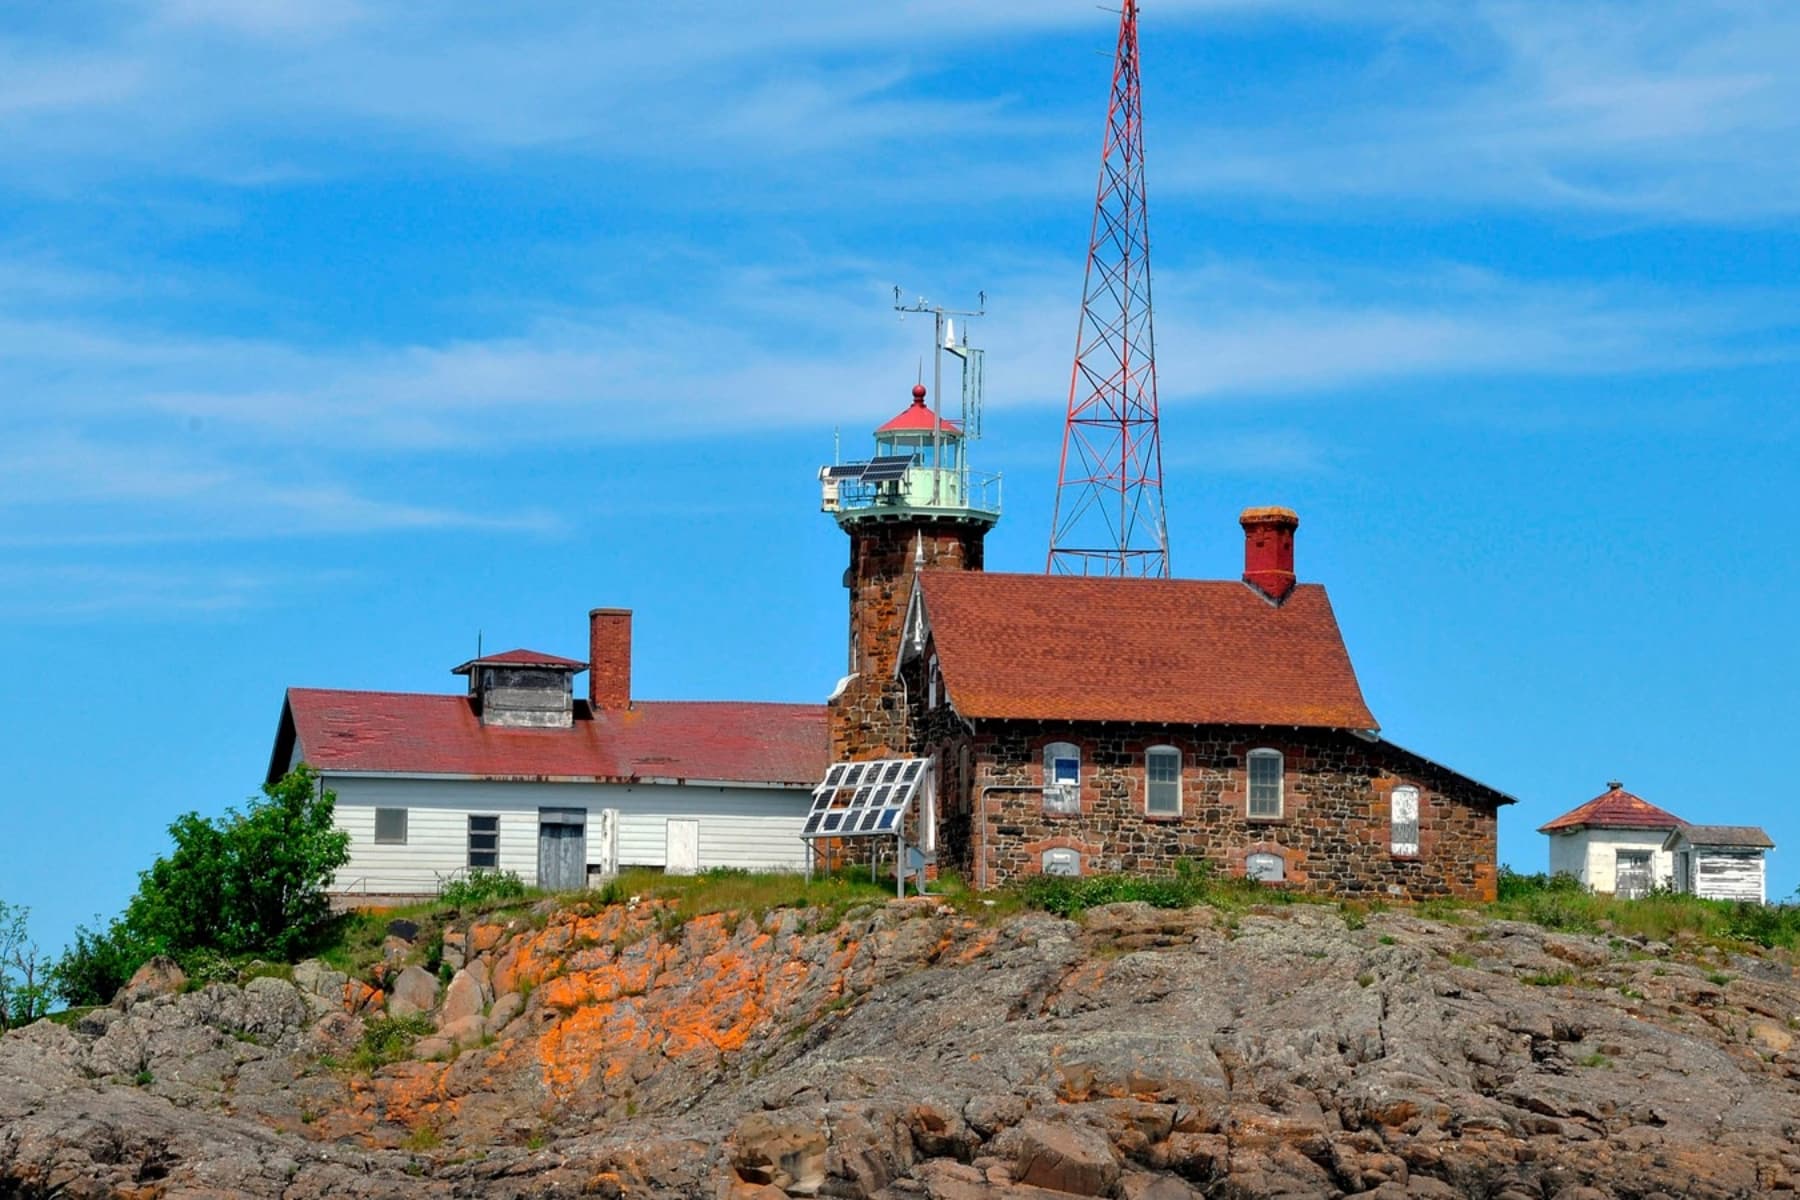 Passage Island Lighthouse at Isle Royale National Park